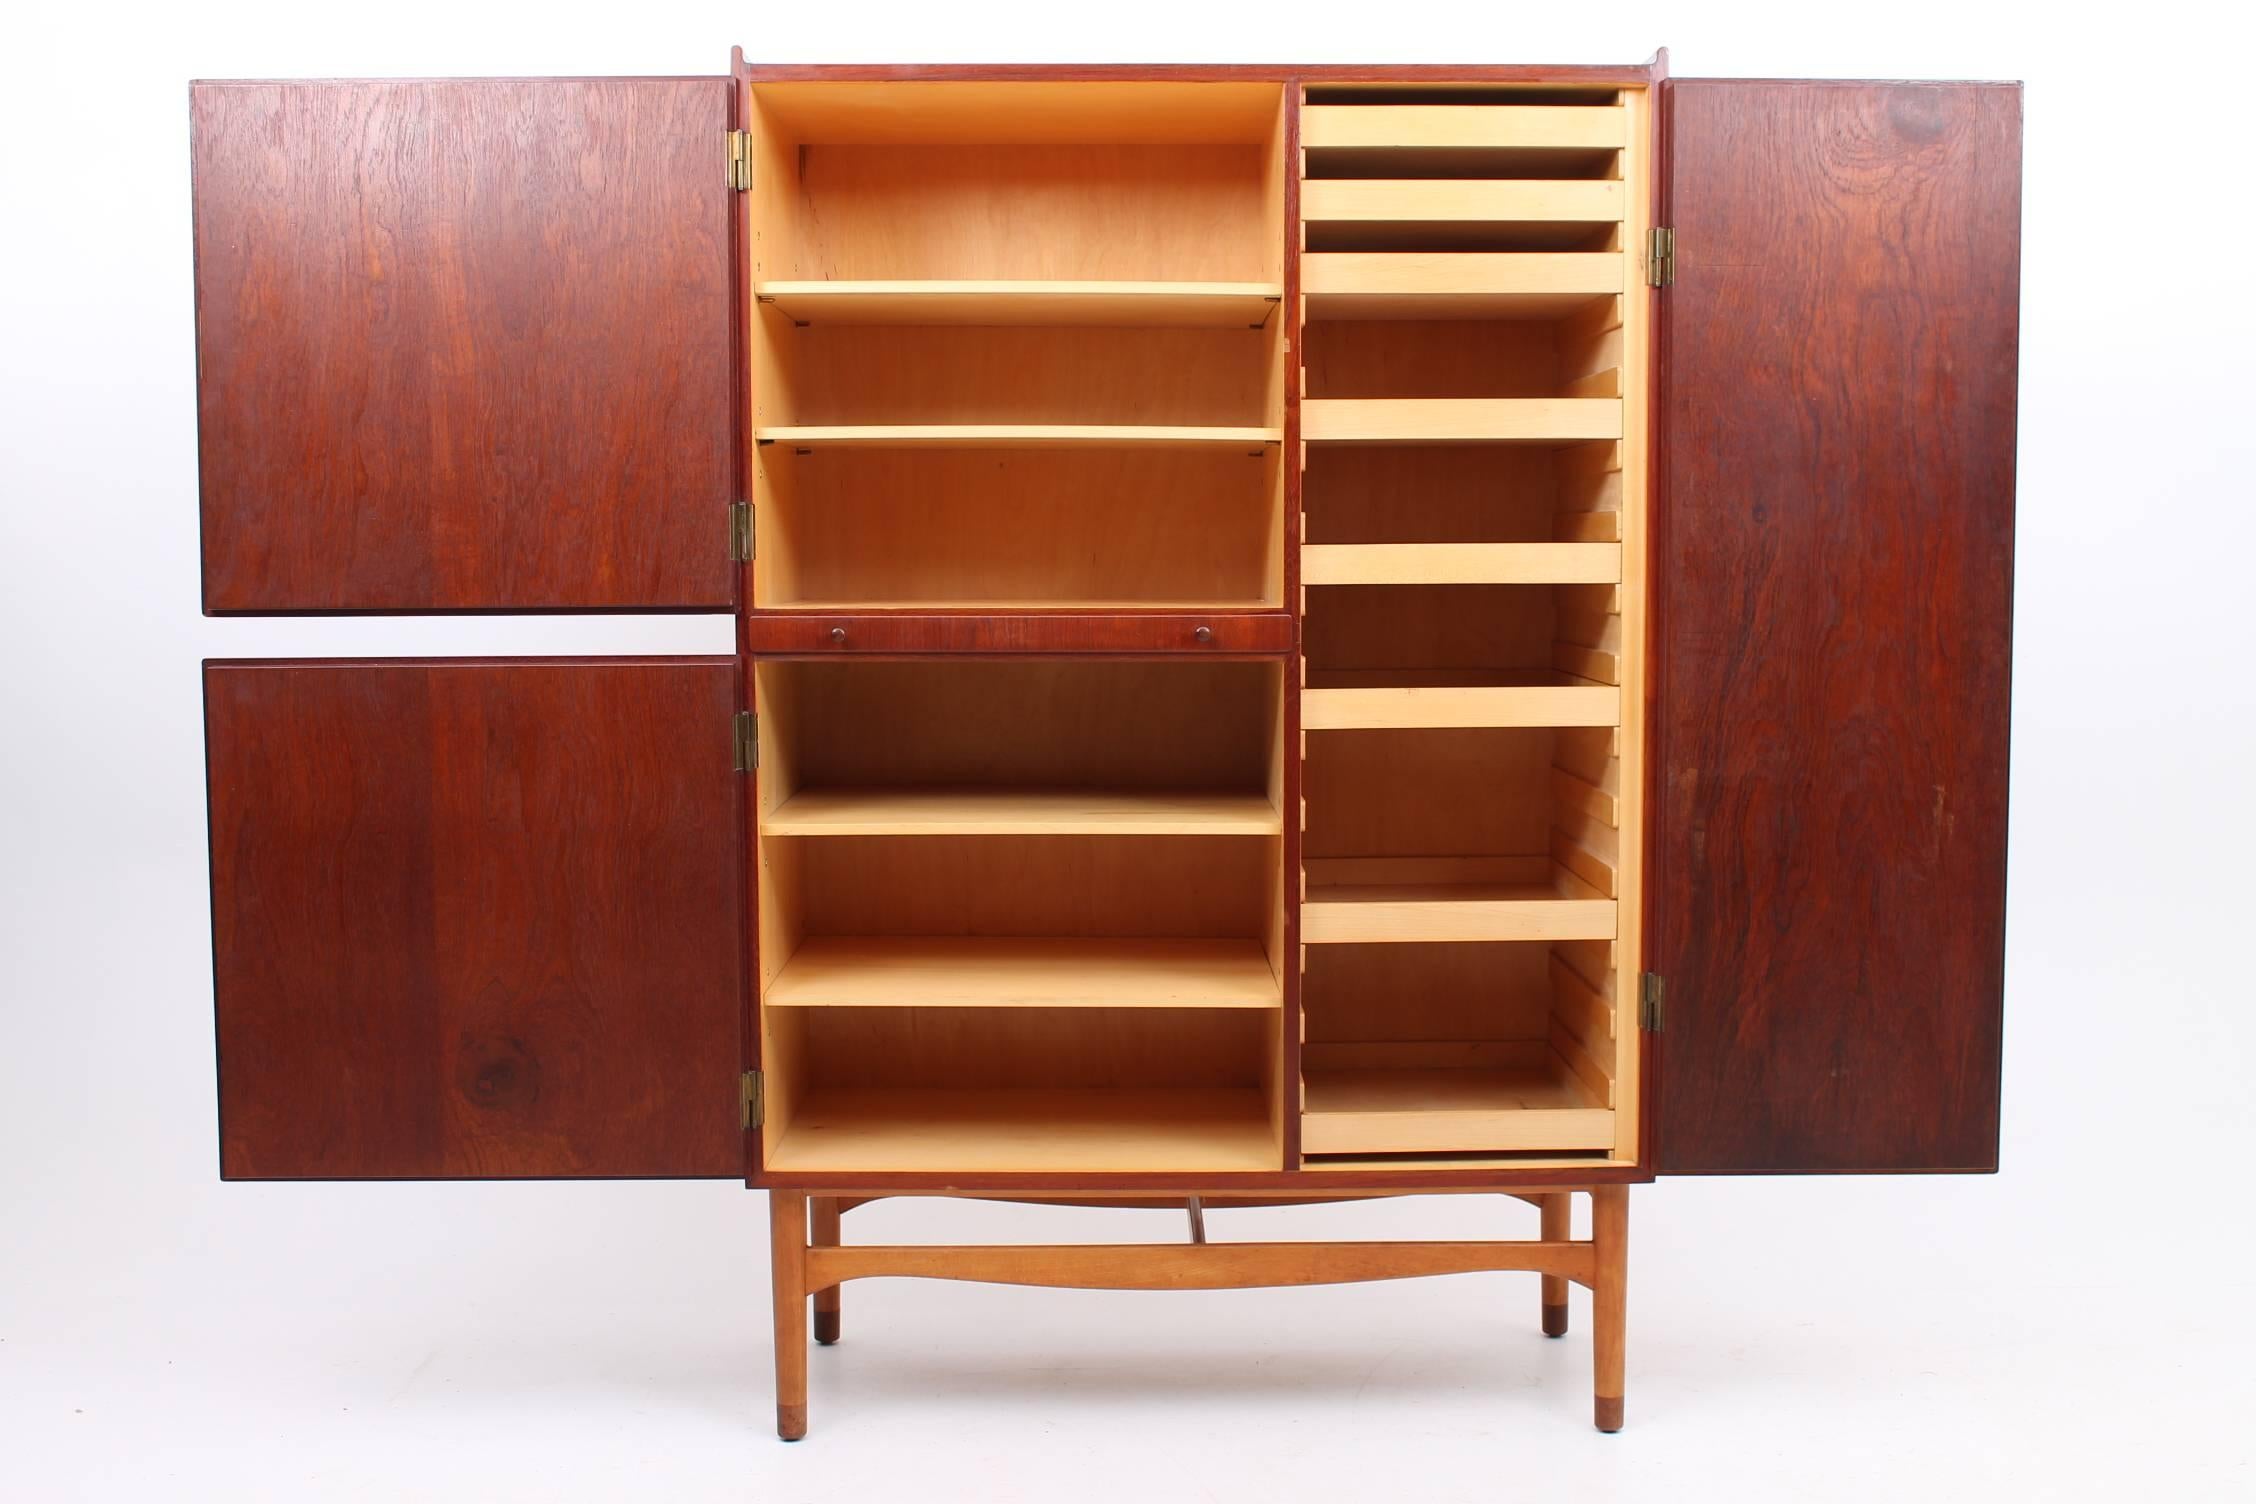 Danish Rare Teak and Beech Cabinet/Wardrobe by Finn Juhl for Bovirke, 1950s For Sale